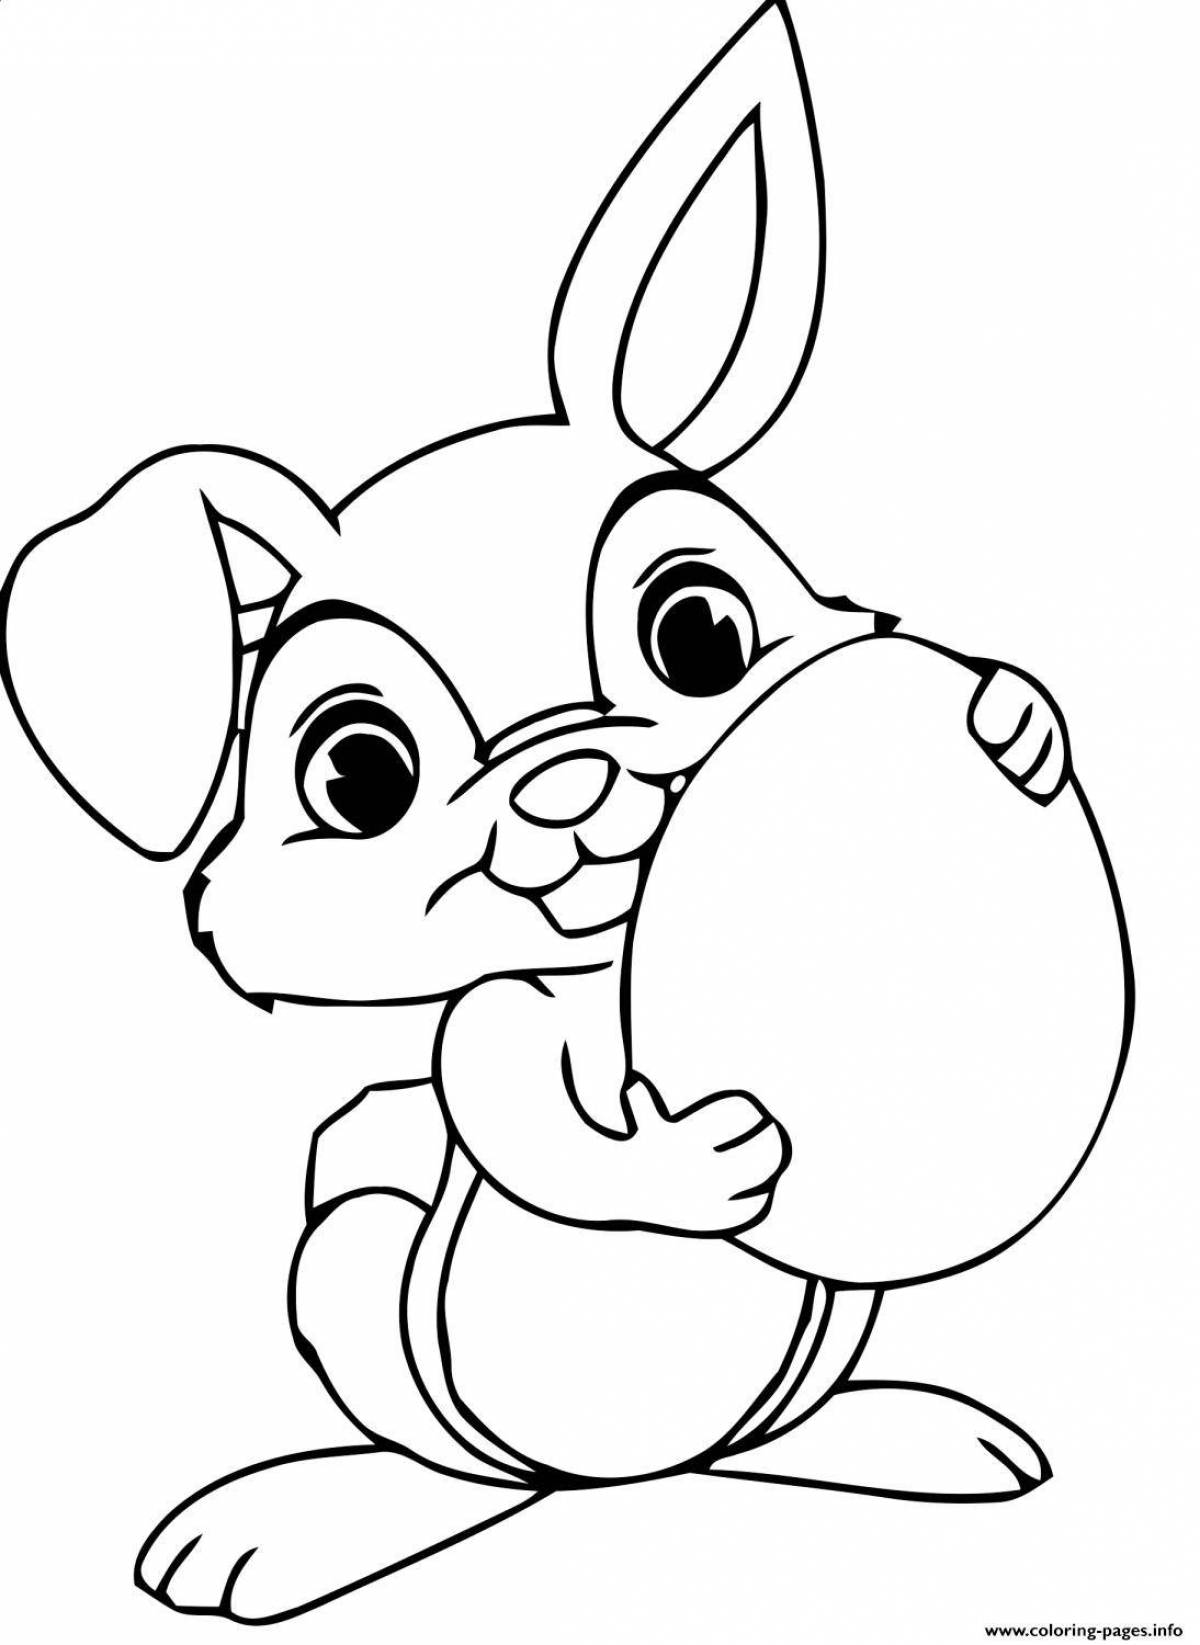 Happy rabbit coloring book